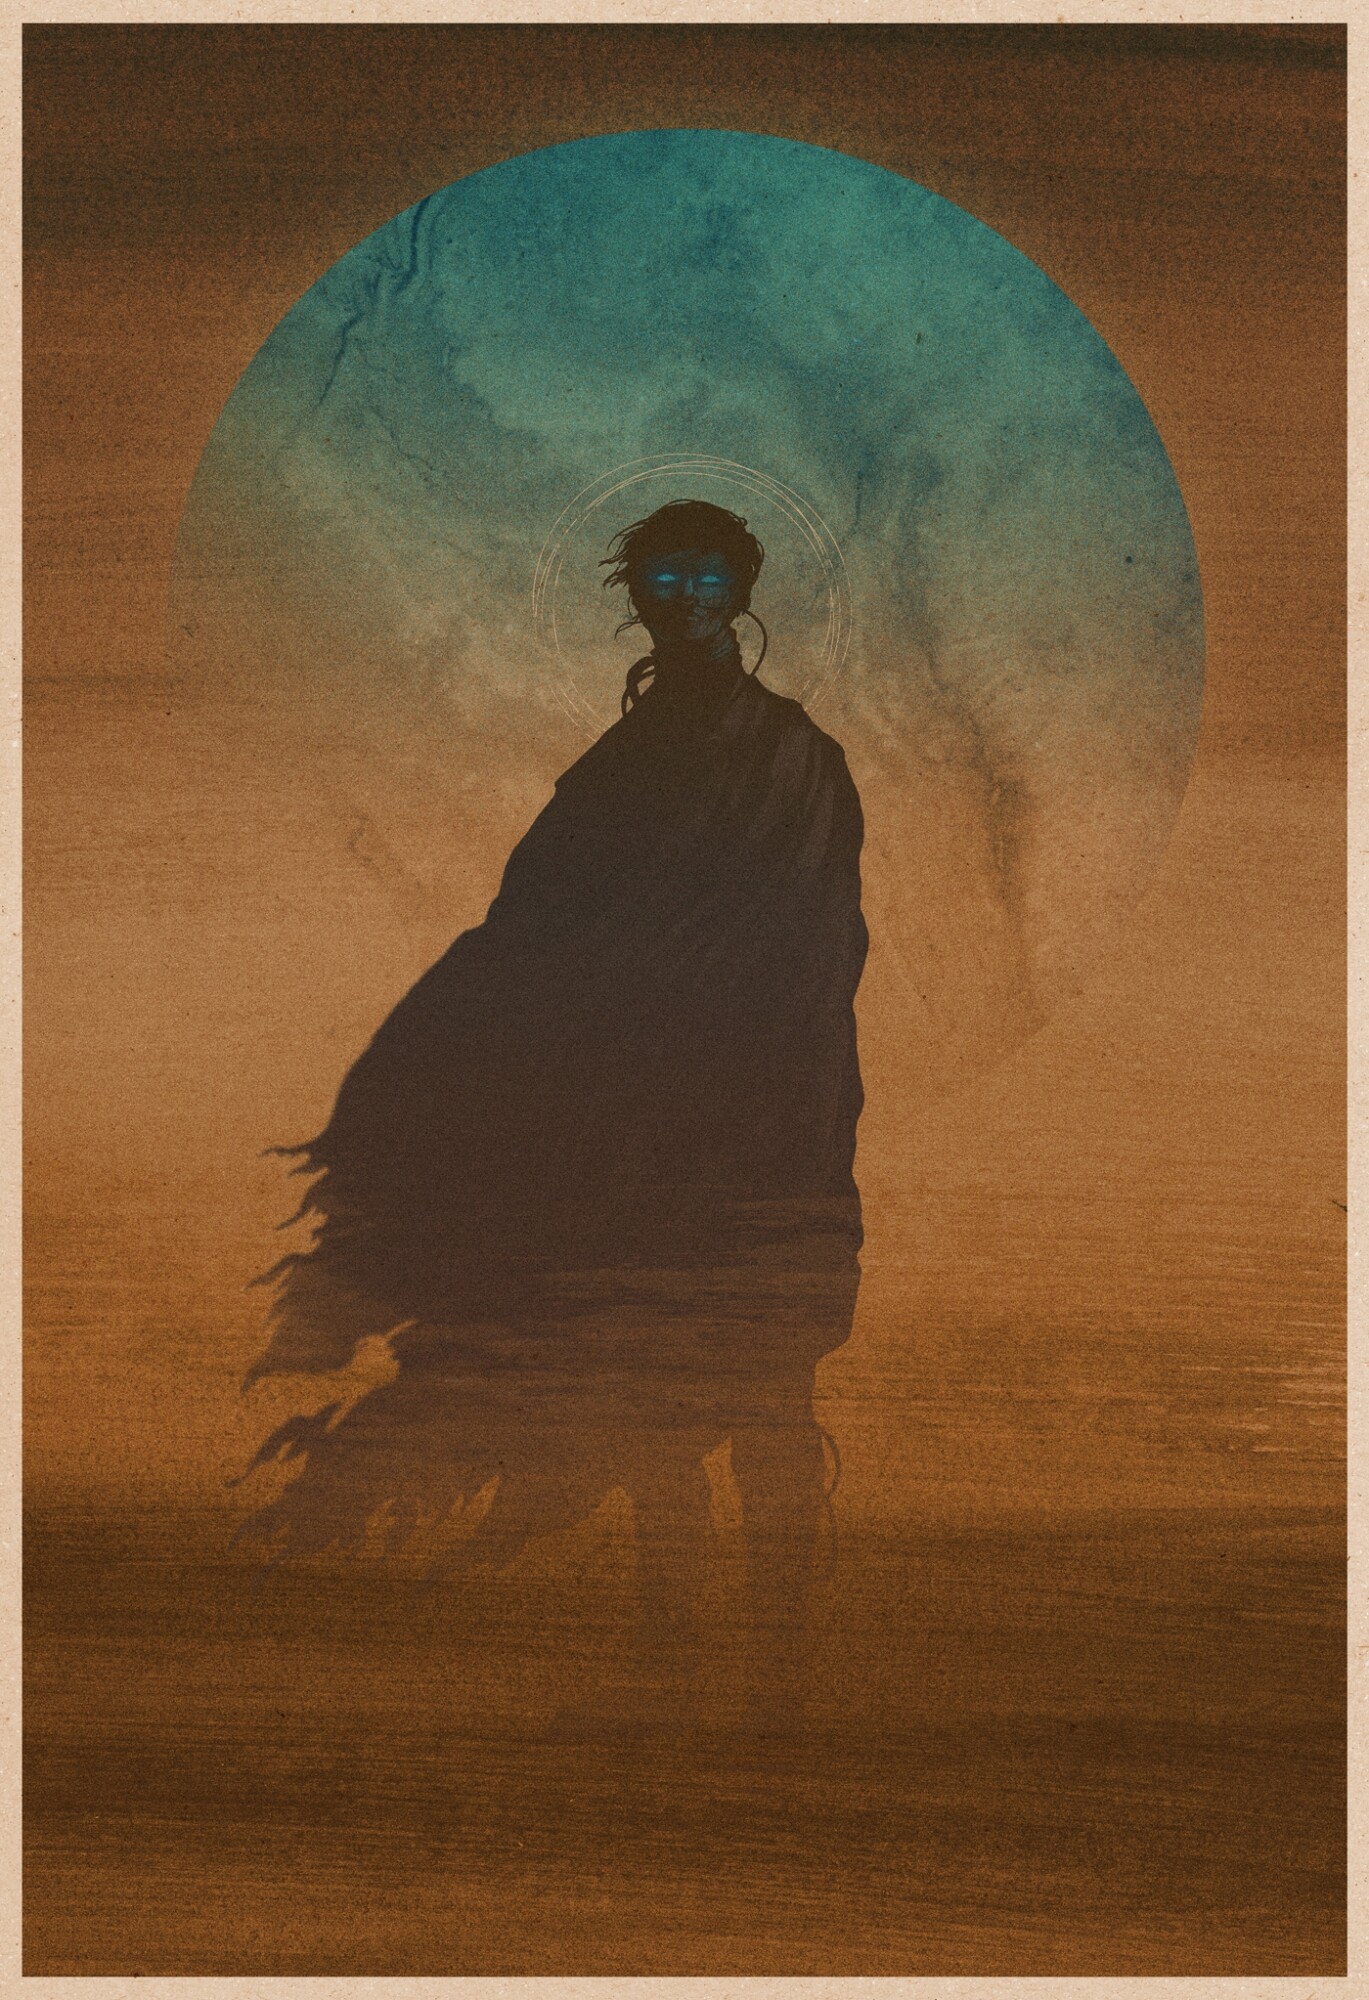 Dune - PosterSpy